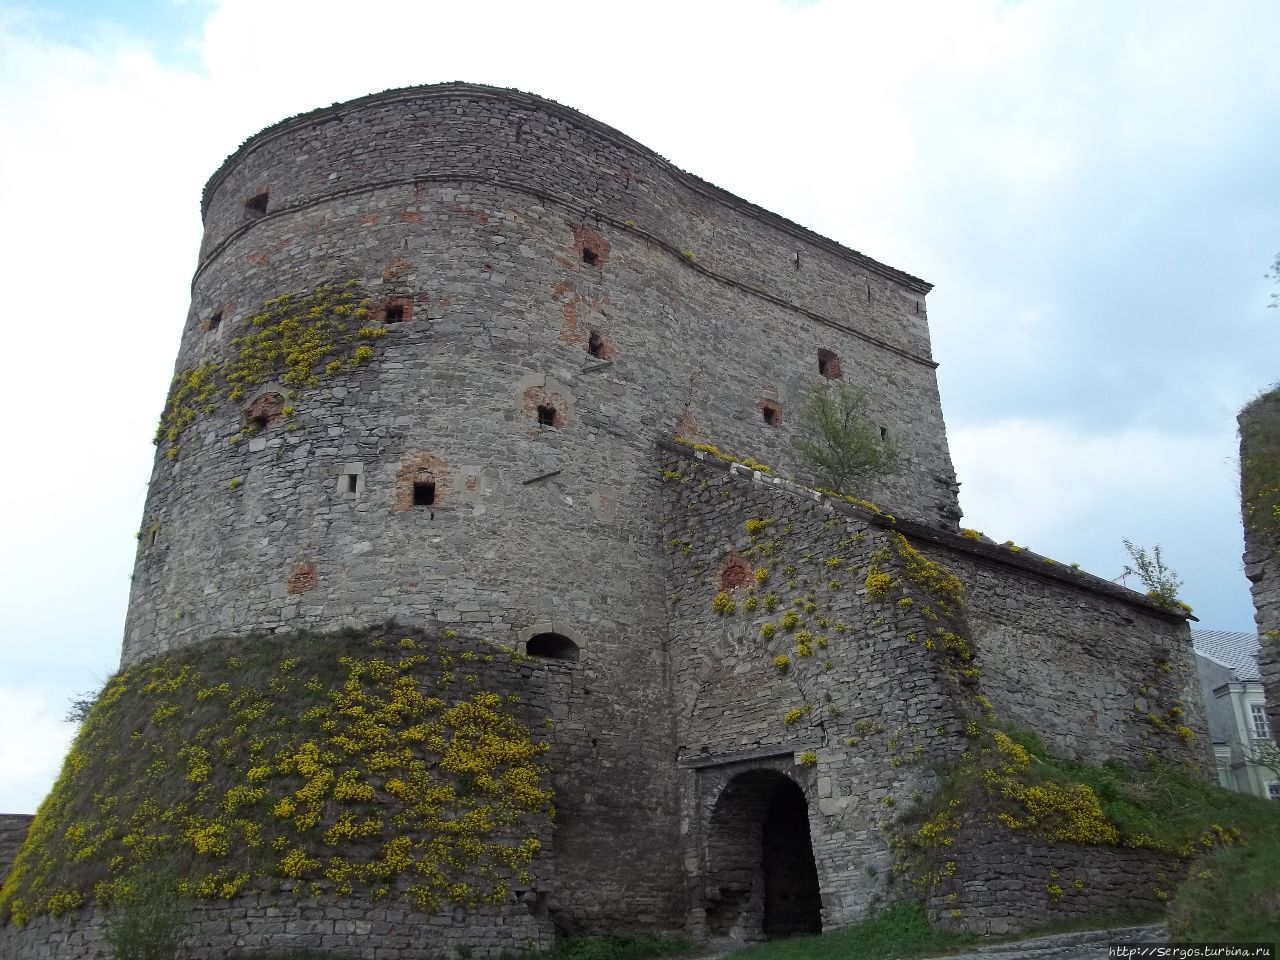 поросшая лишайником башня Стефана Батория (Скорняжная) Каменец-Подольский, Украина